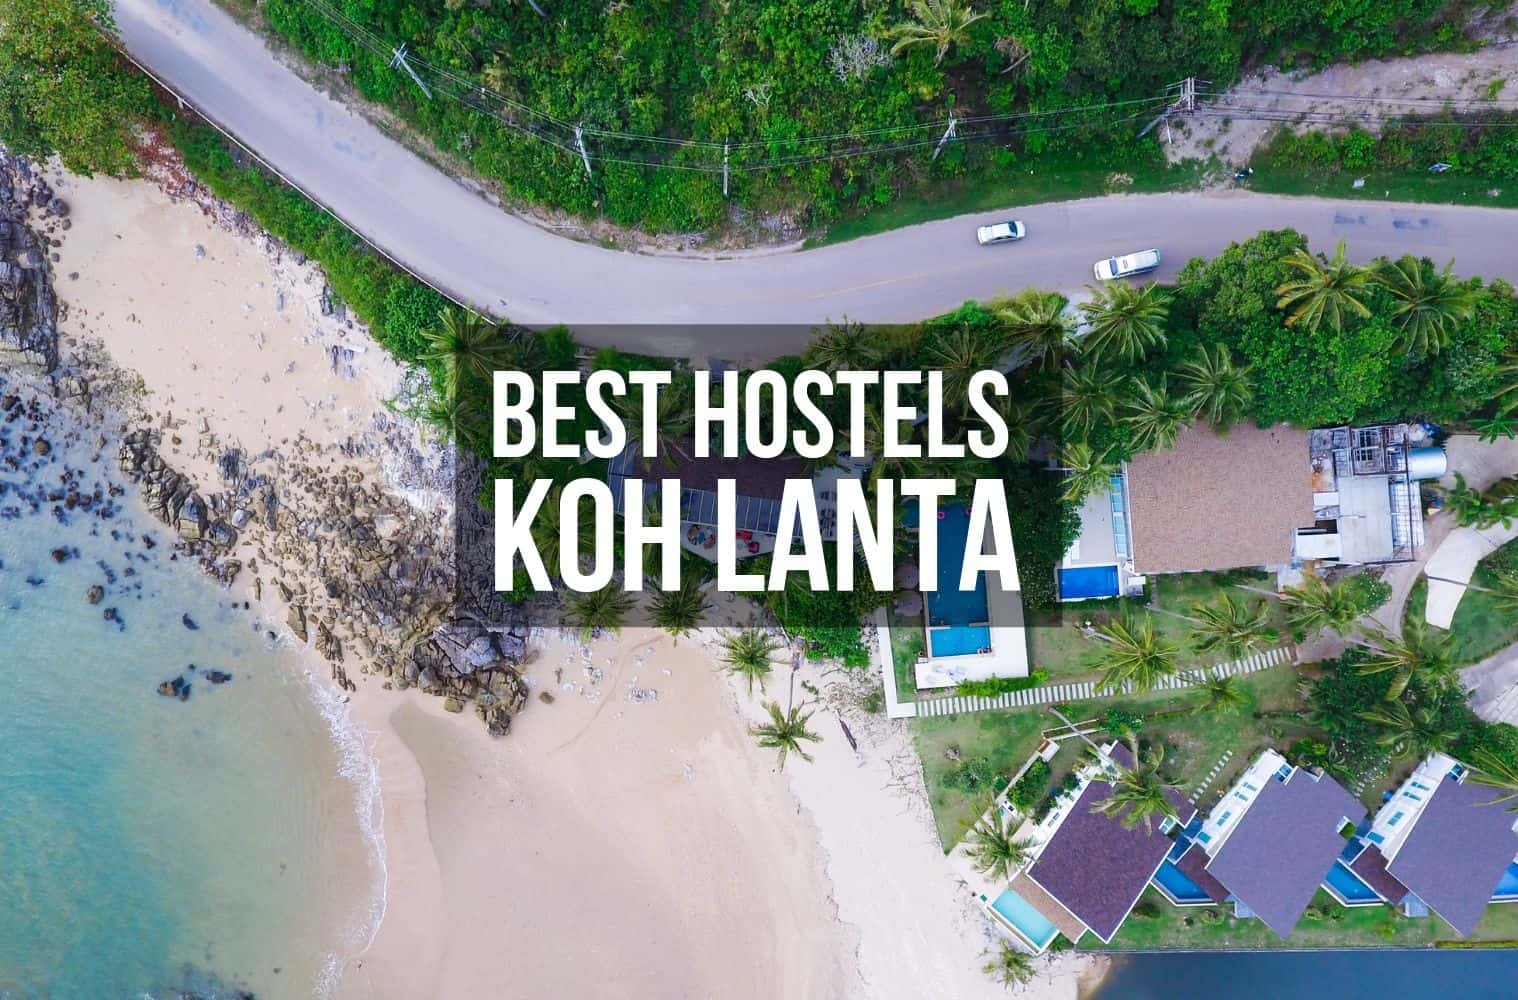 Best Hostels in Koh Lanta